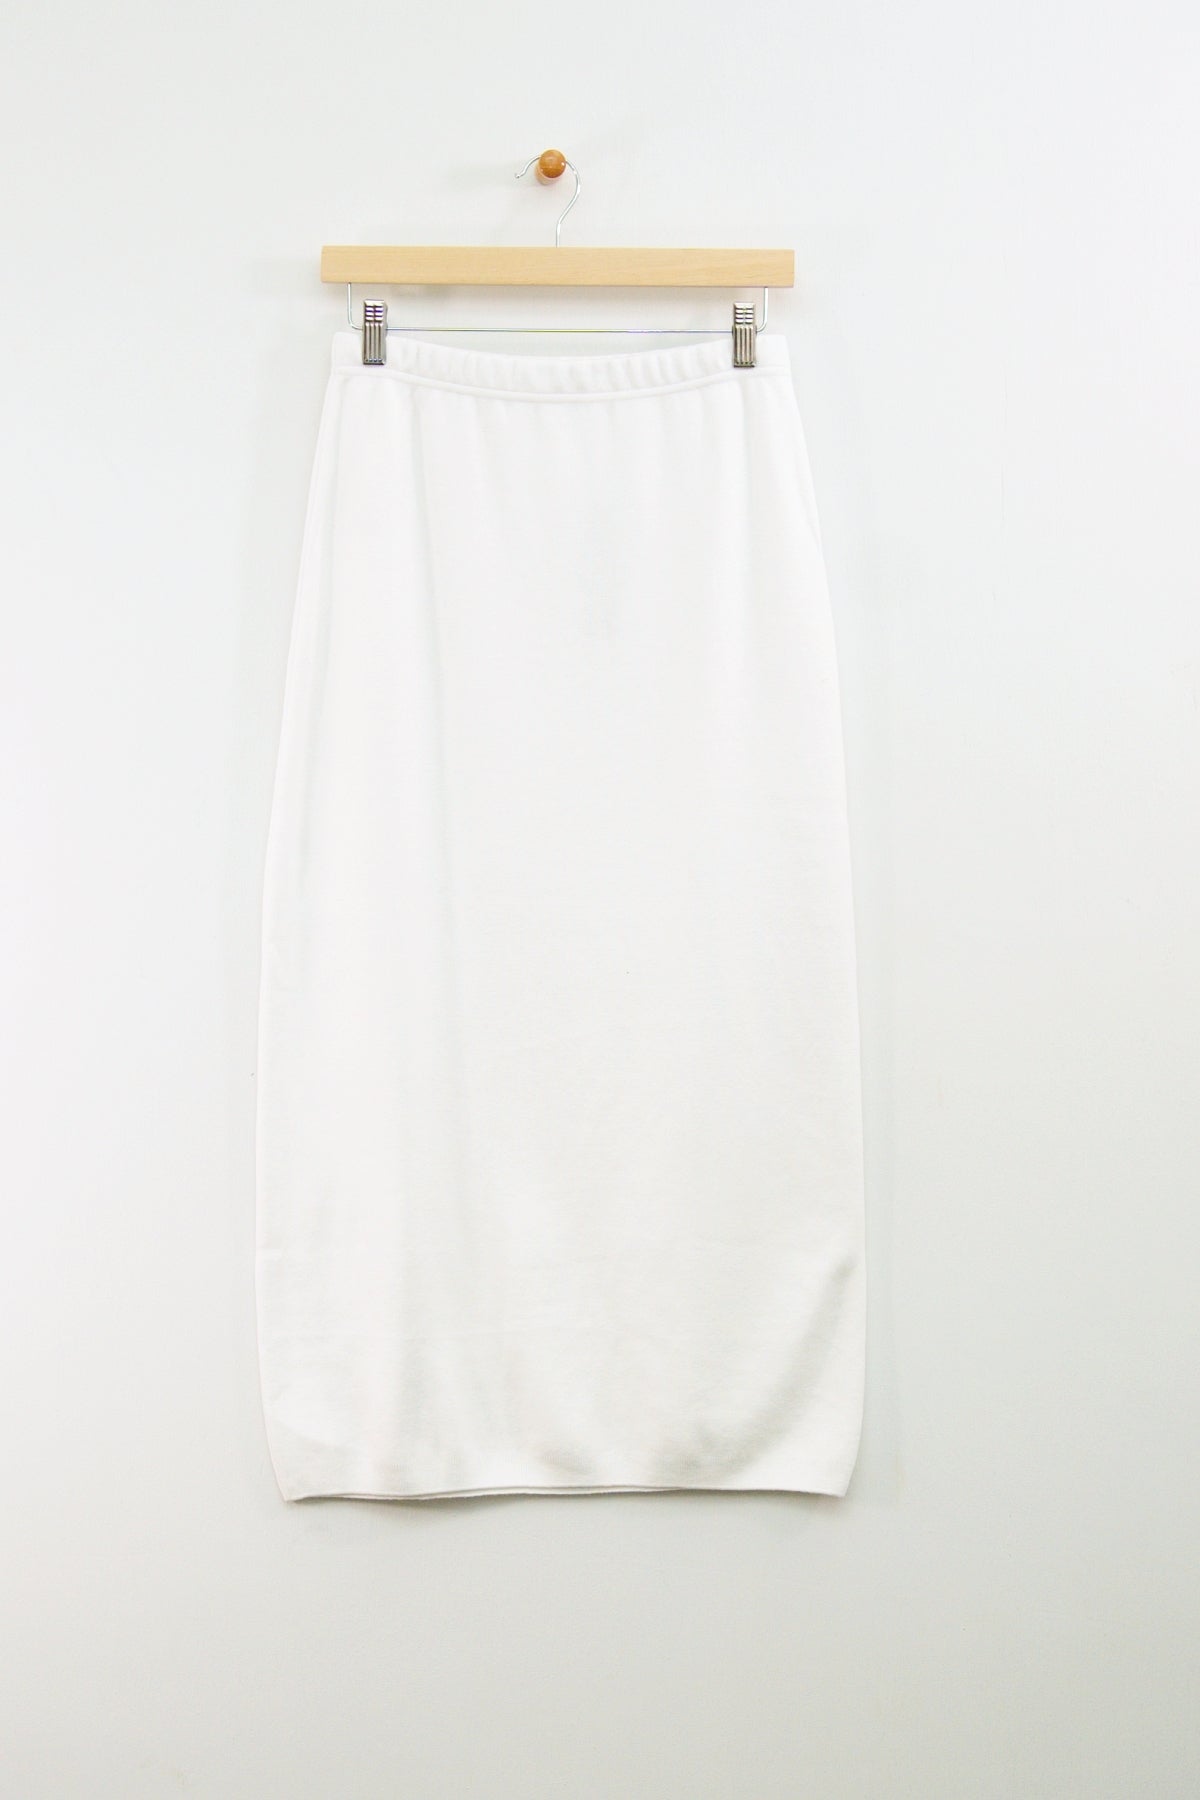 34" Long Slim Skirt